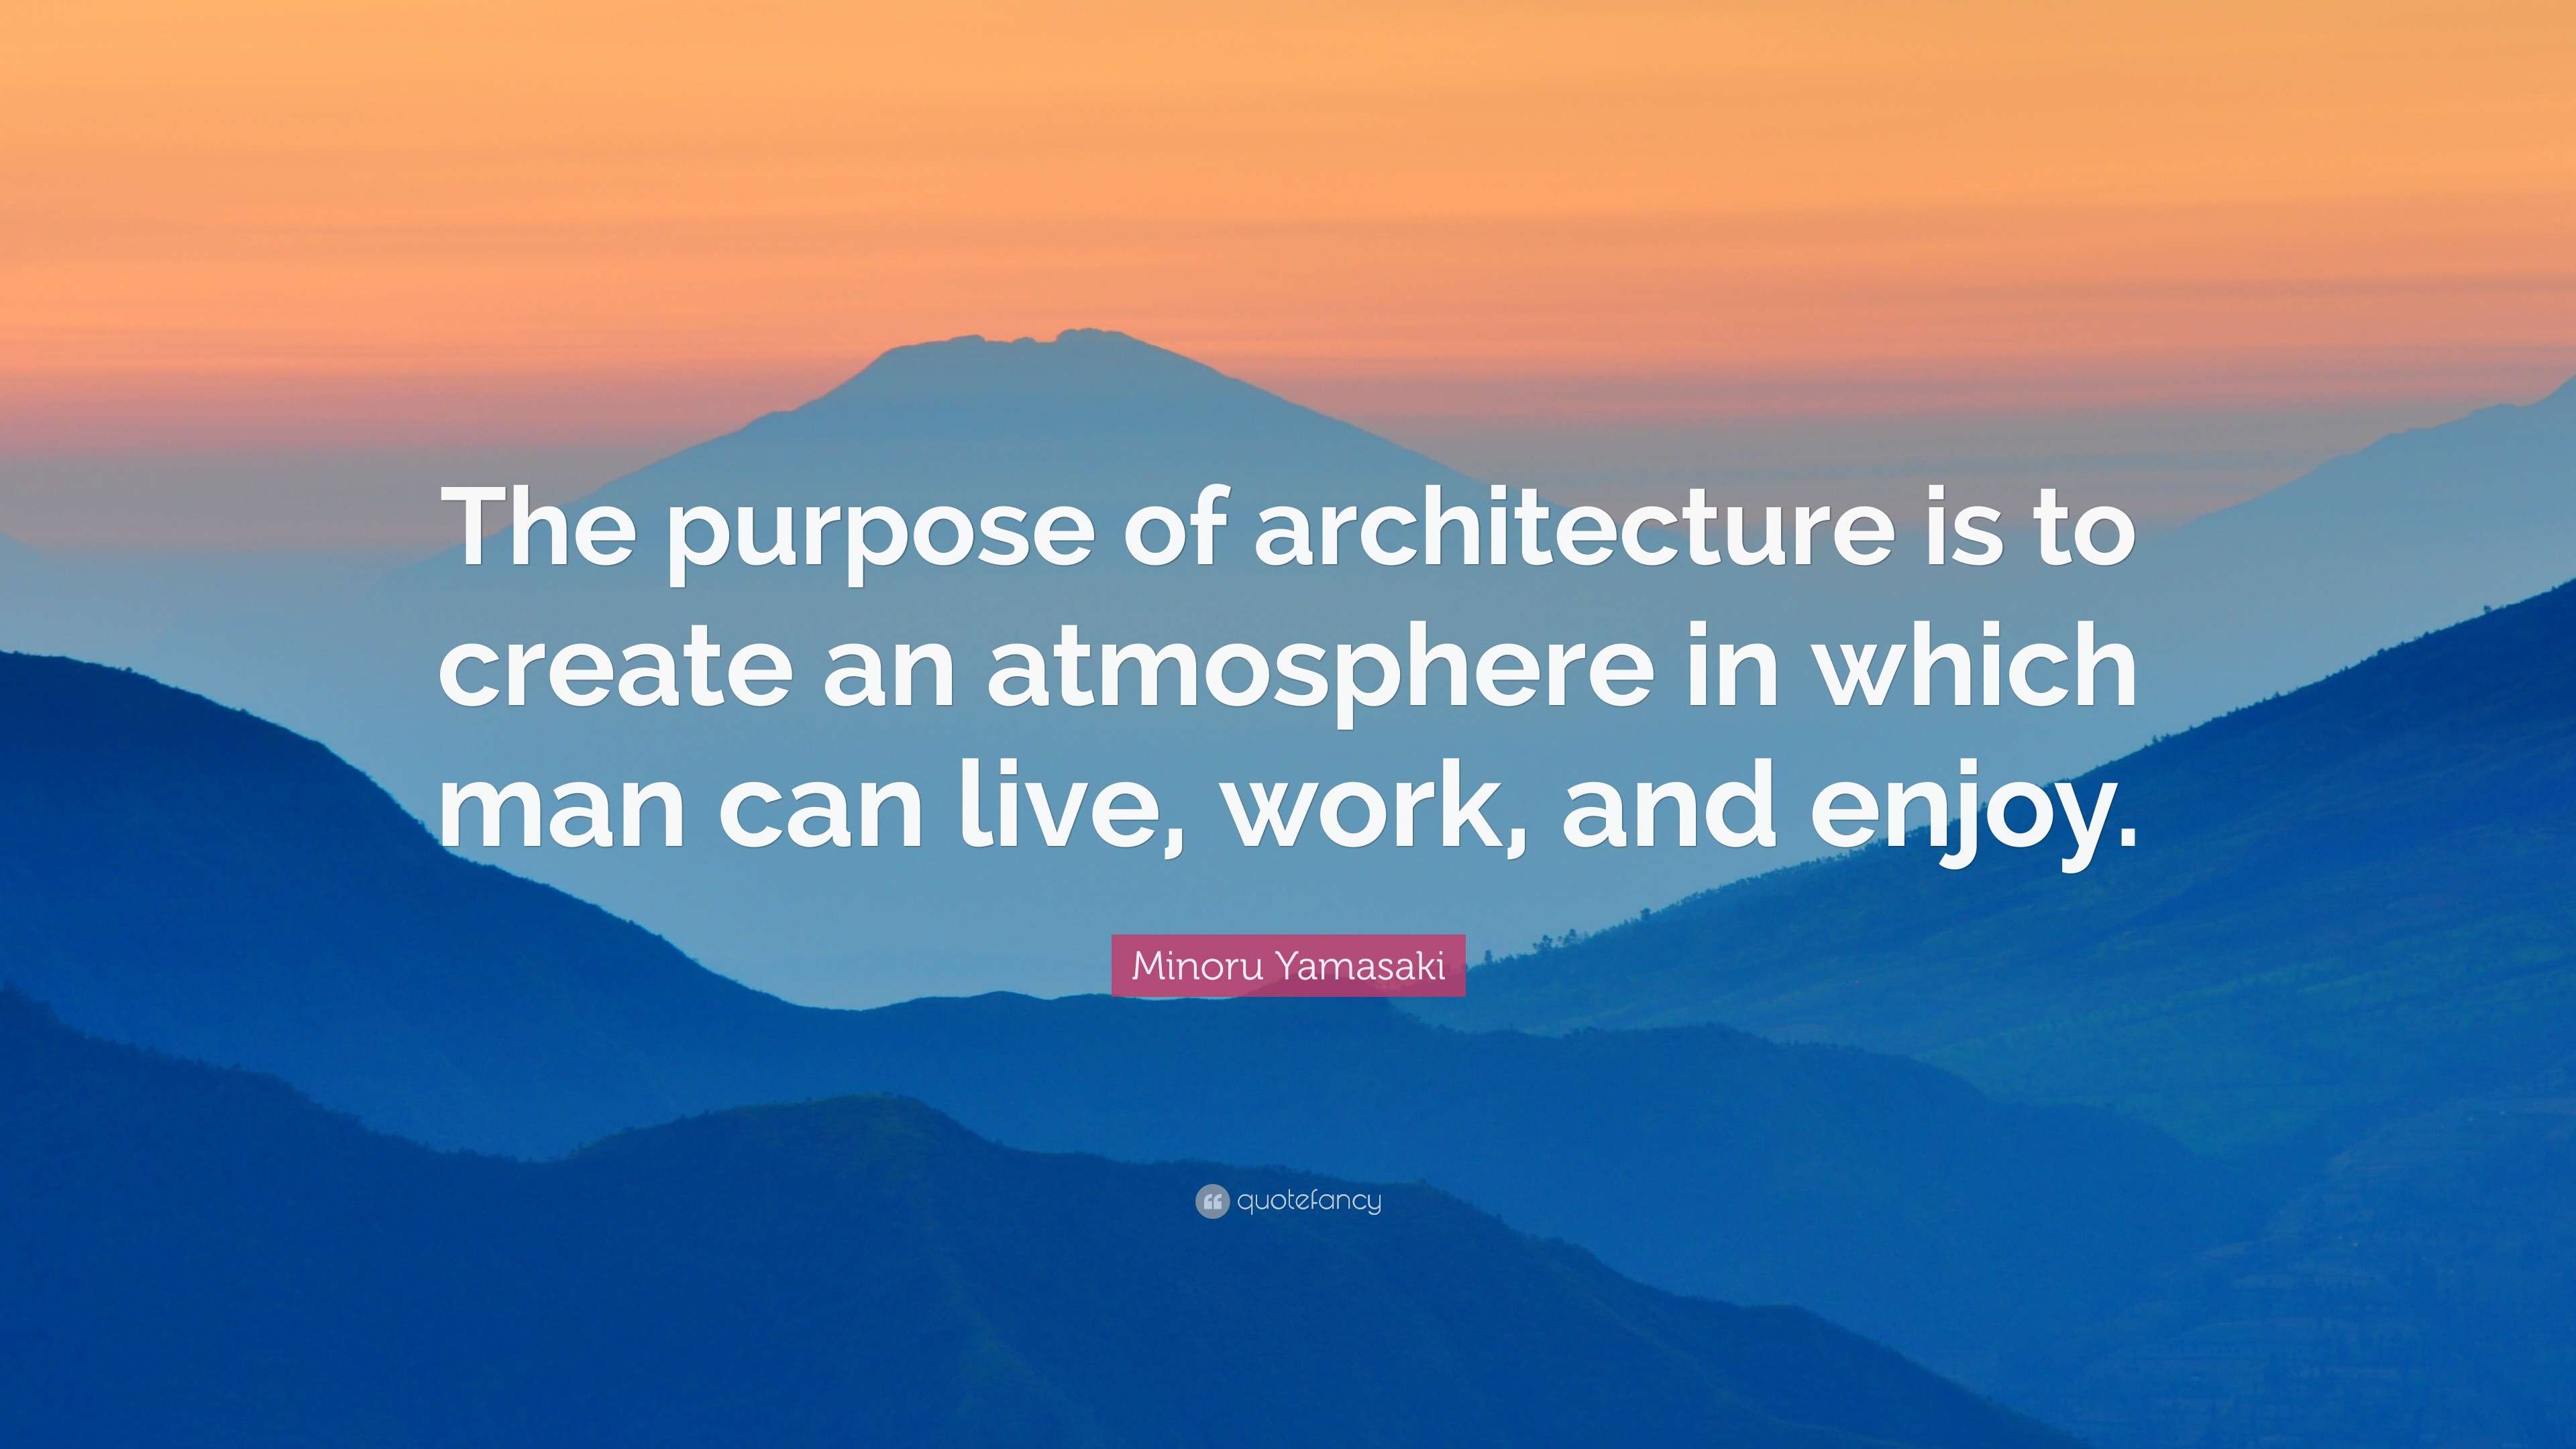 The purpose of architecture